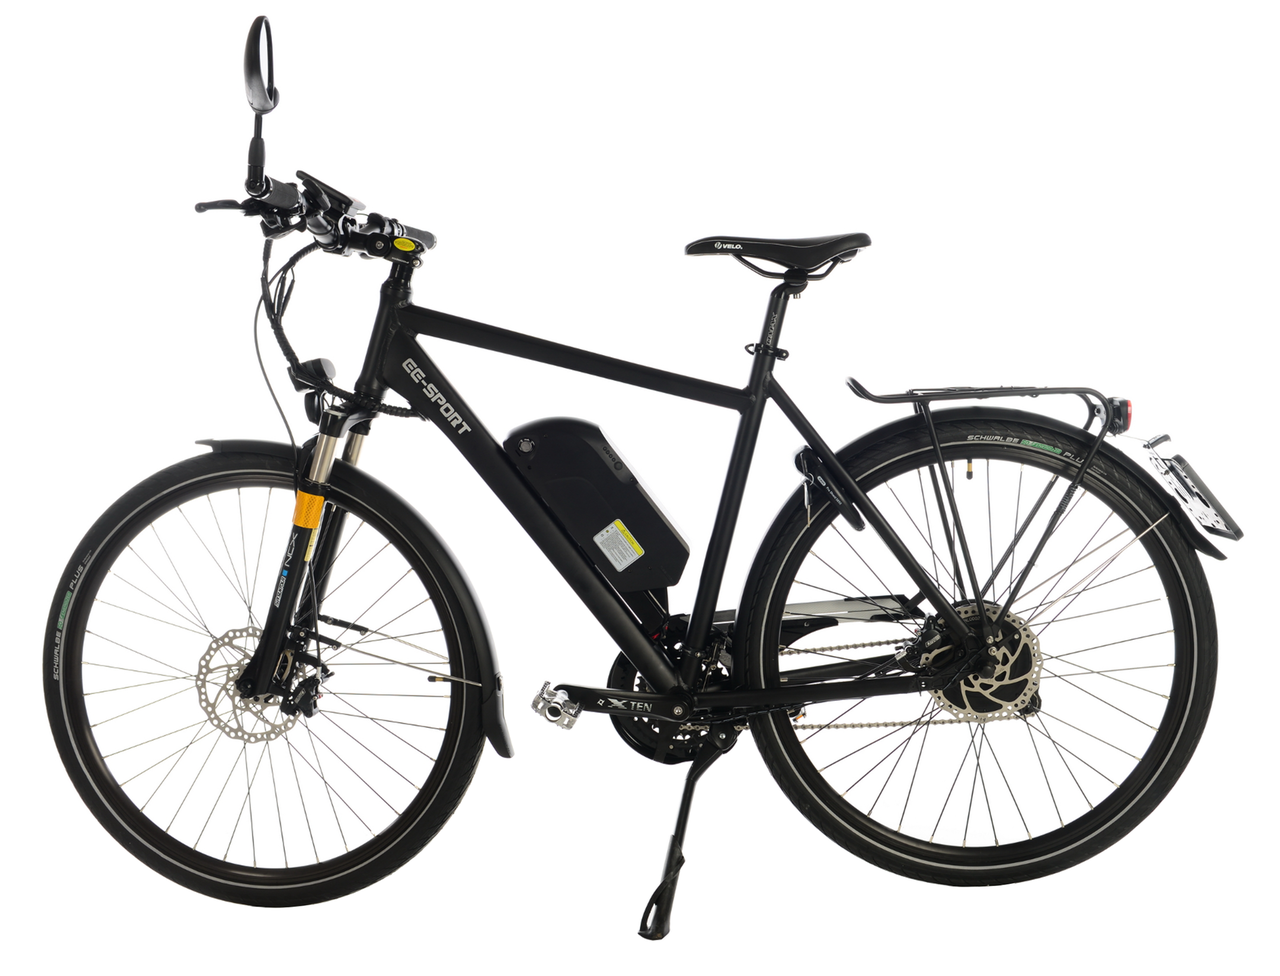 Verklaring visueel Geef energie EE SPORT speedbike kopen, goedkope speed pedelec - EBIKE EFOS ombouwset om  u fiets elektrisch te maken